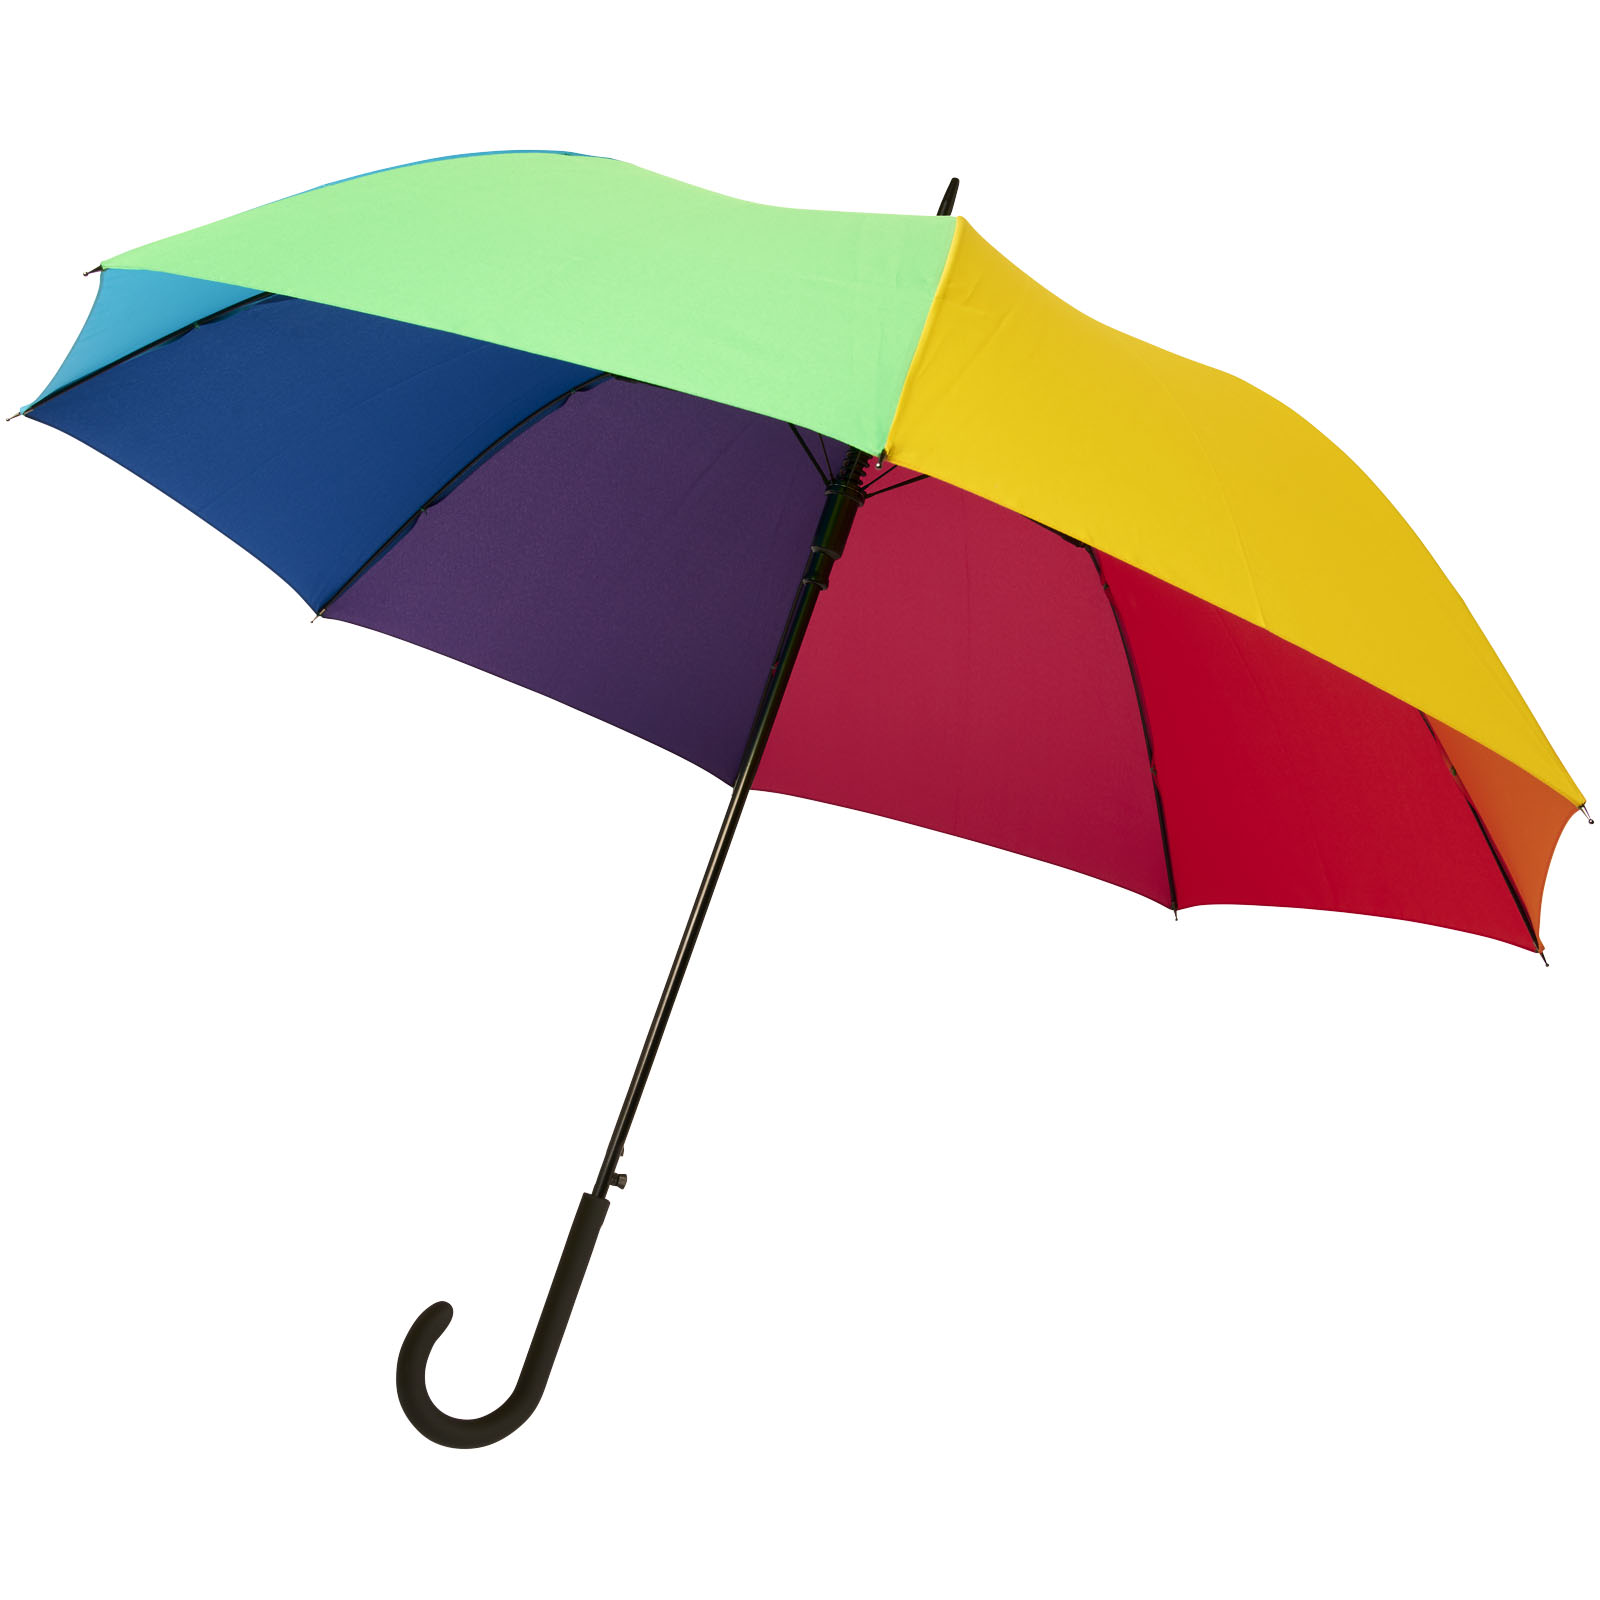 Parapluie RainbowFlex - Château-Chinon - Zaprinta France